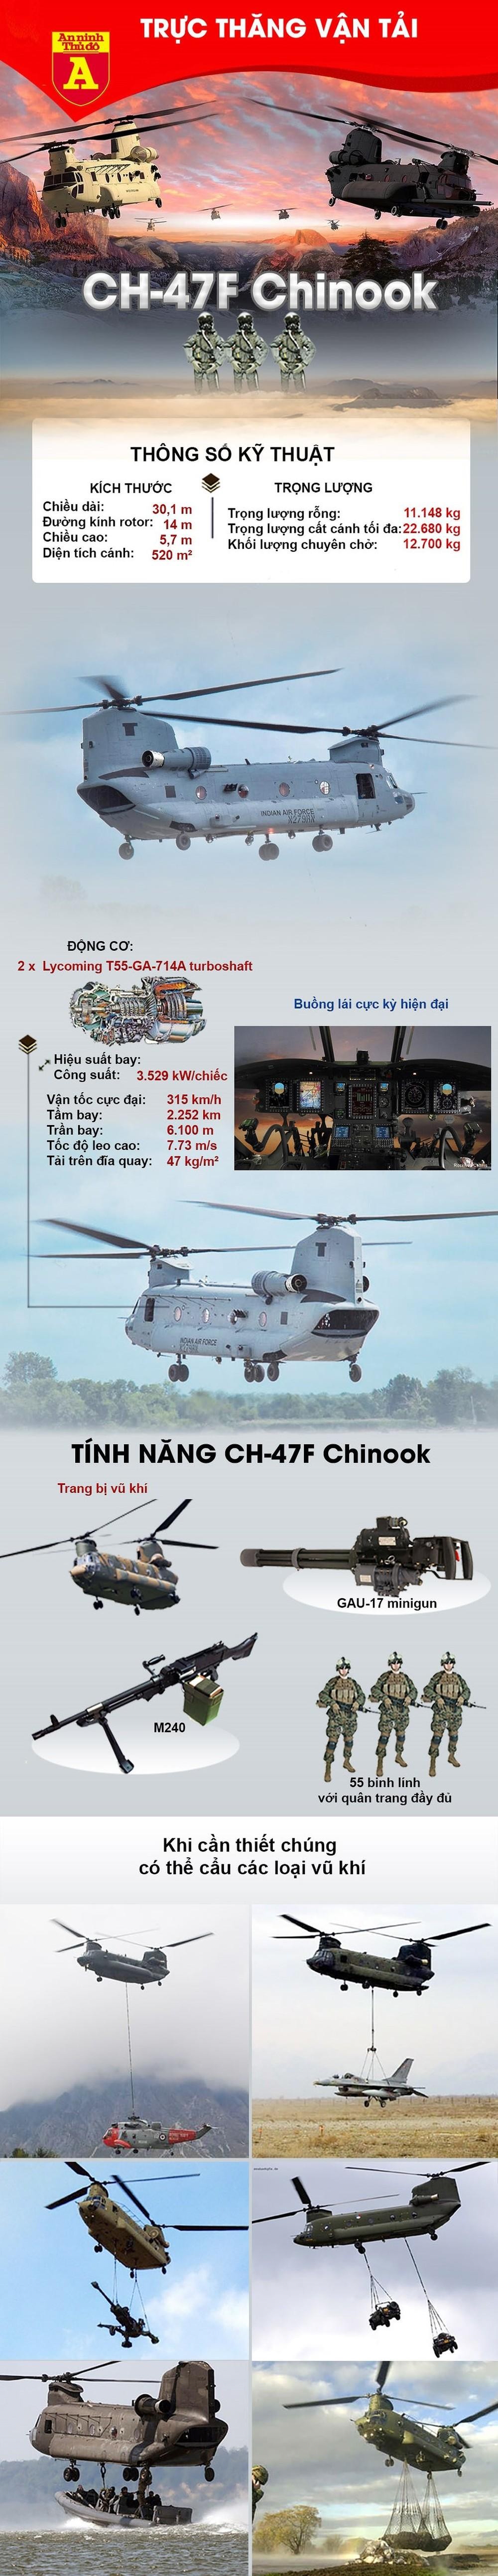 Toàn bộ trực thăng CH-47 Chinook của Mỹ bị 'nằm đất' vì sao? ảnh 3